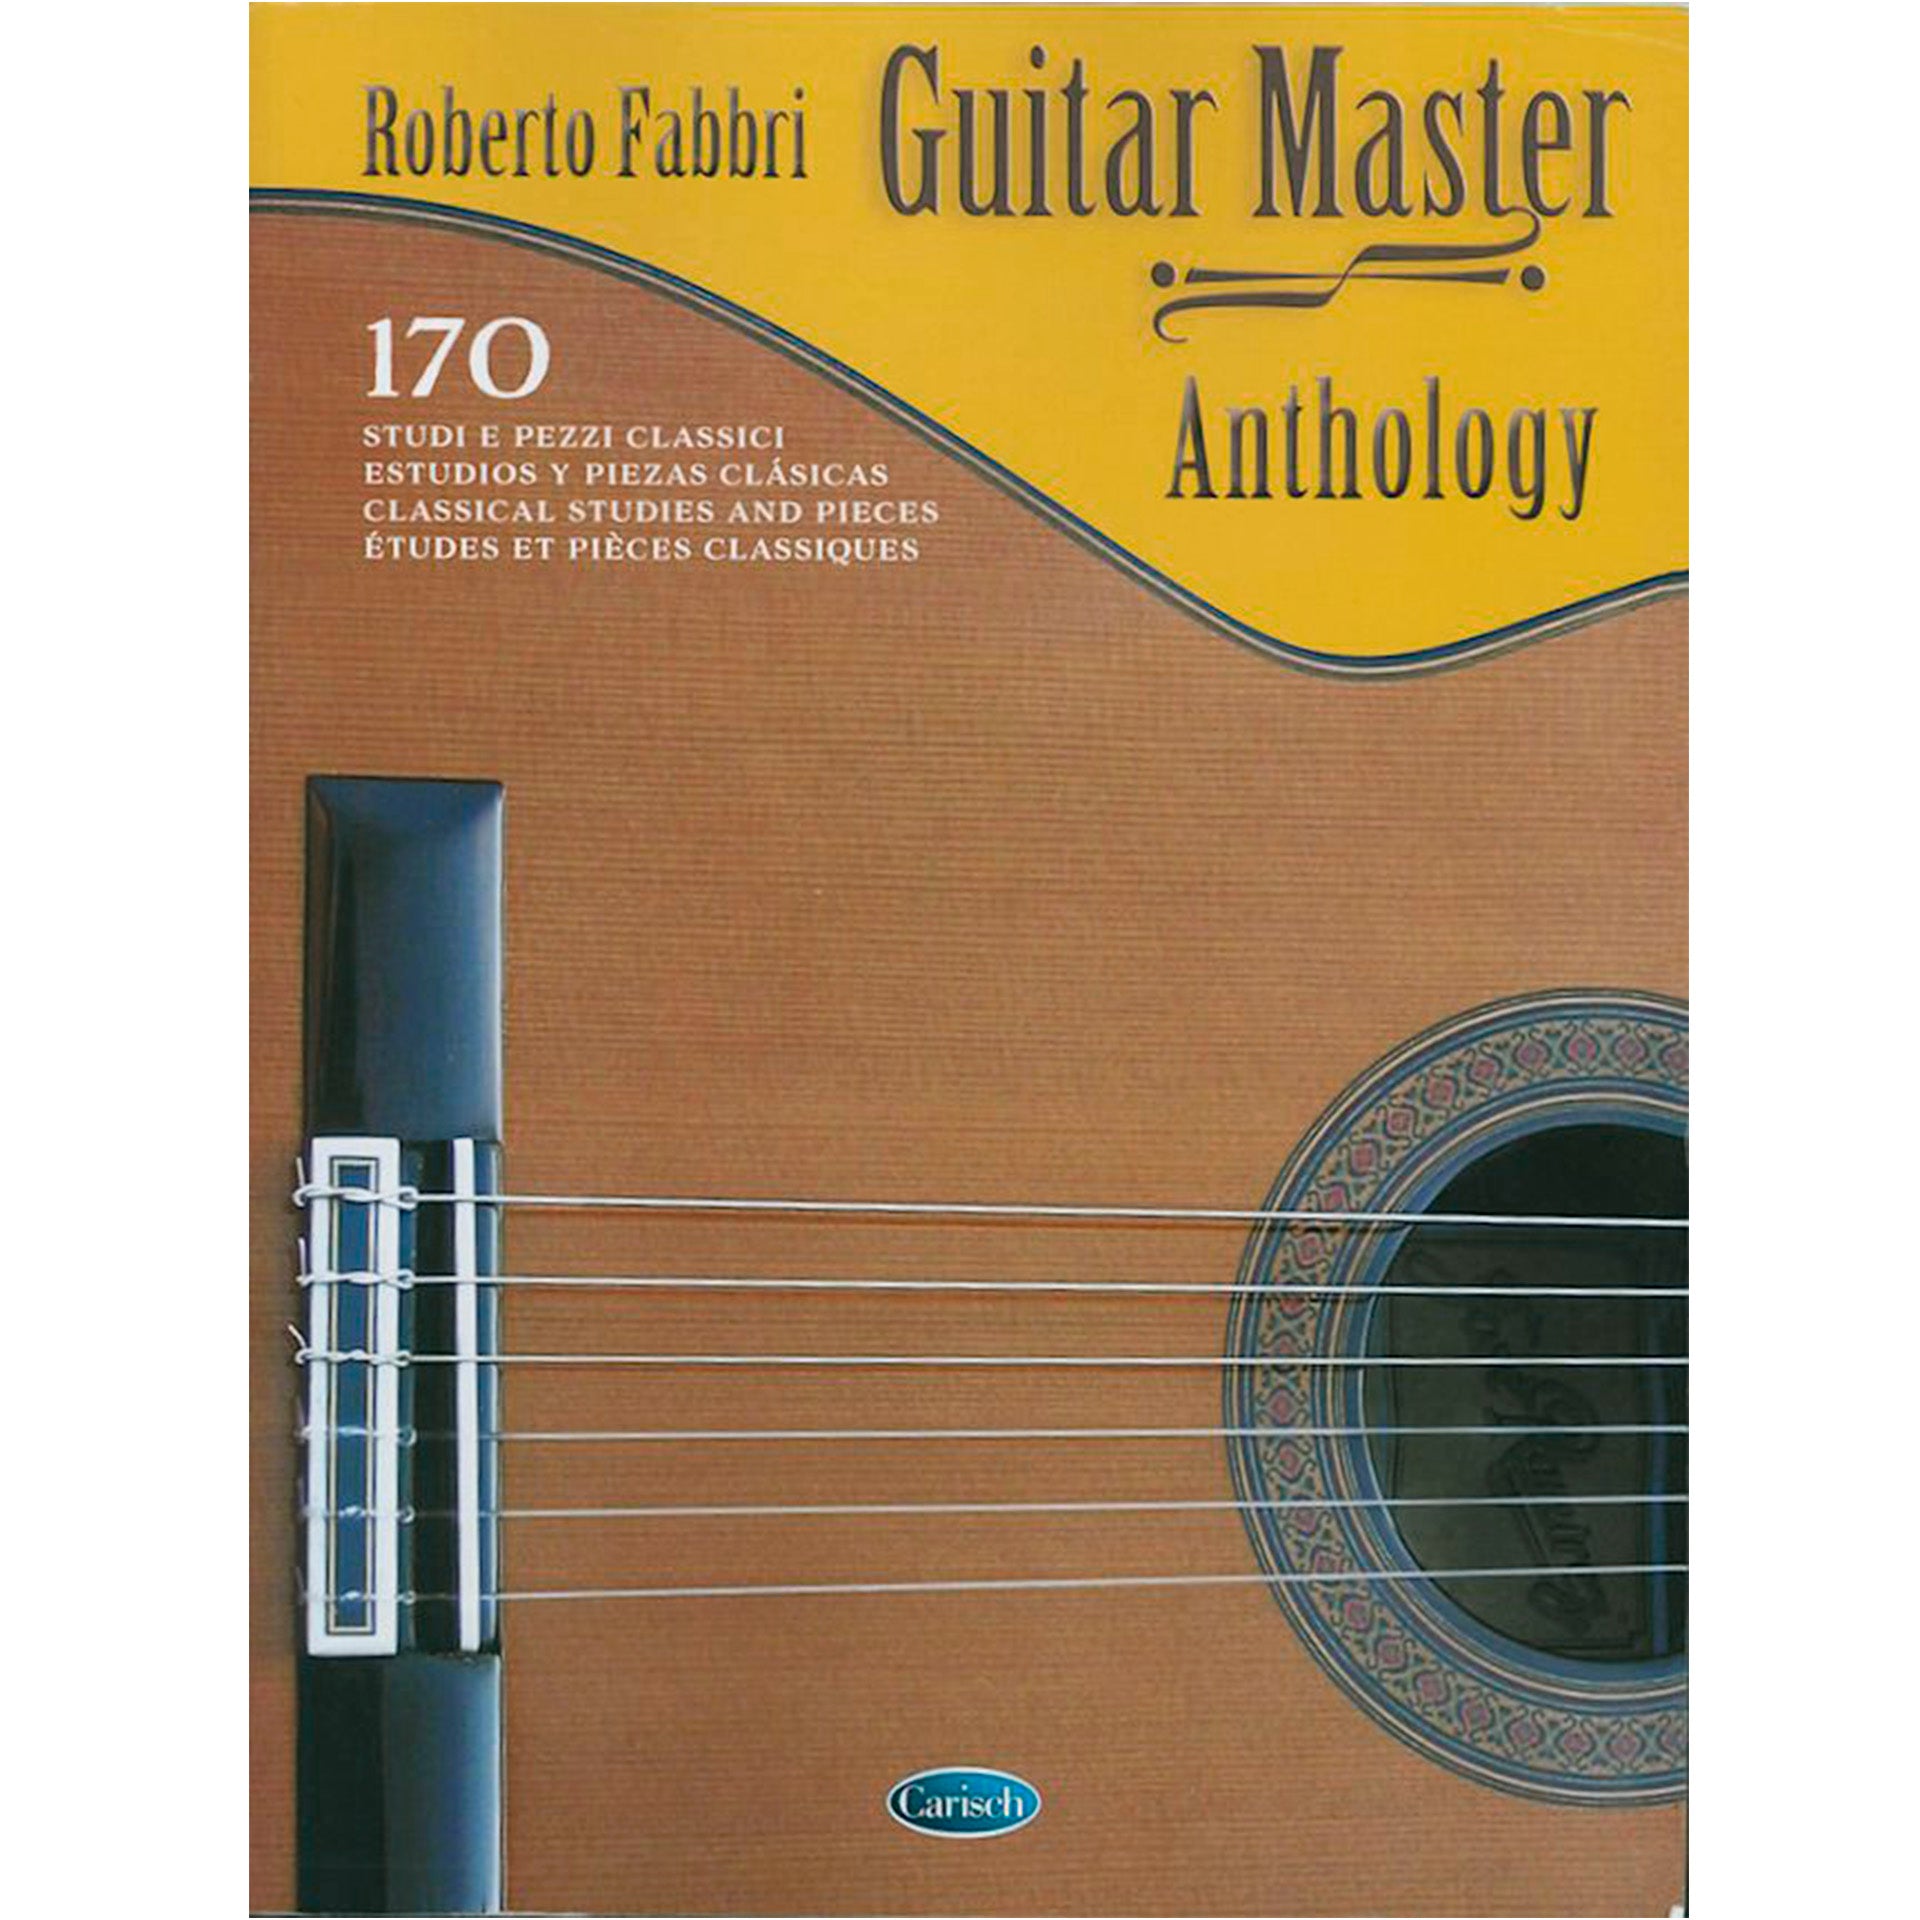 Image 1 of Roberto Fabbris Guitar Master Anthology - SKU# 49-367706 : Product Type Media : Elderly Instruments